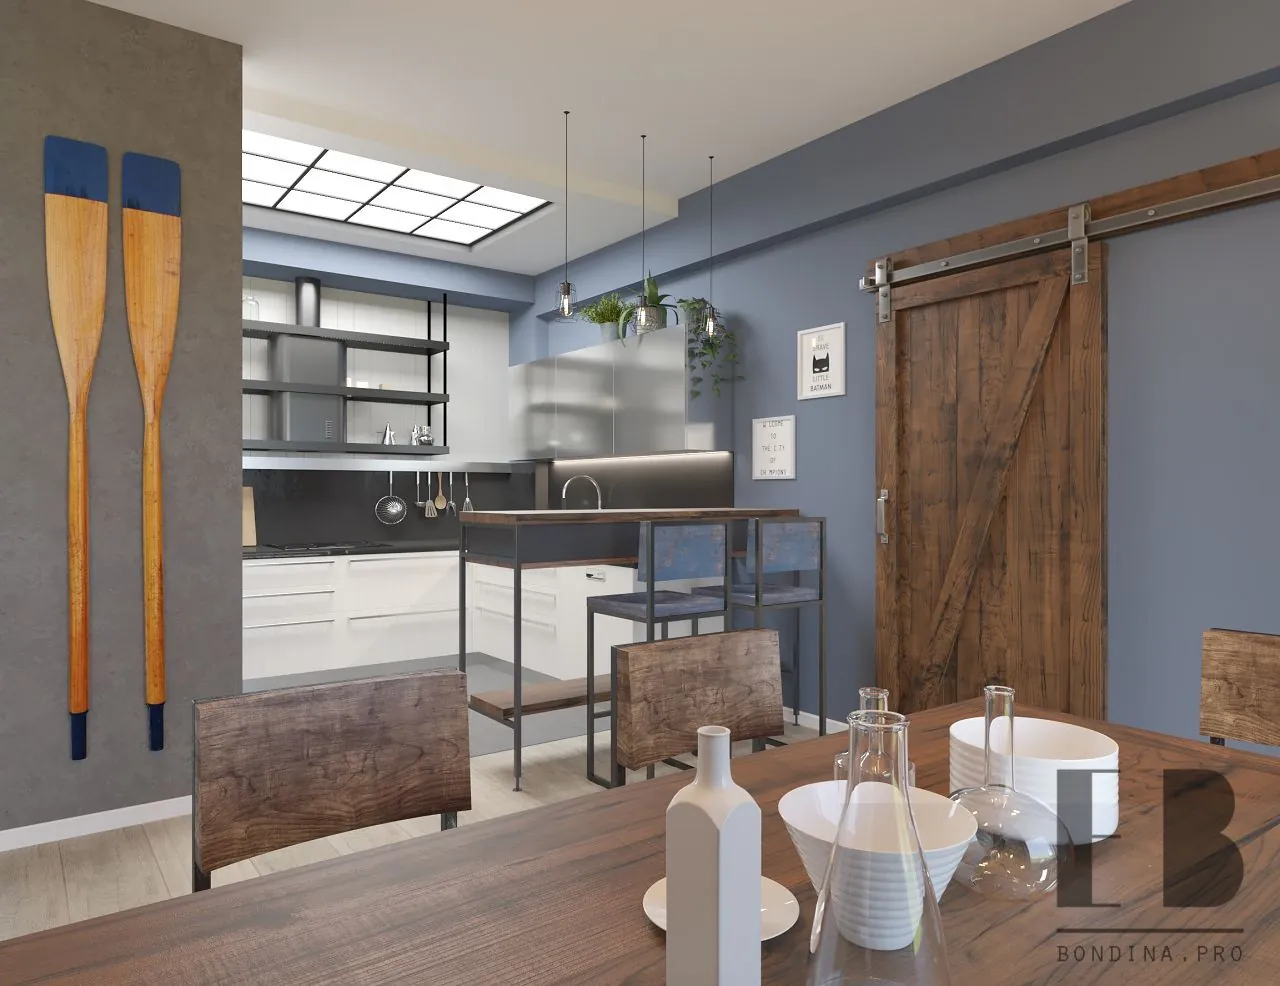 Trendy kitchen interior design